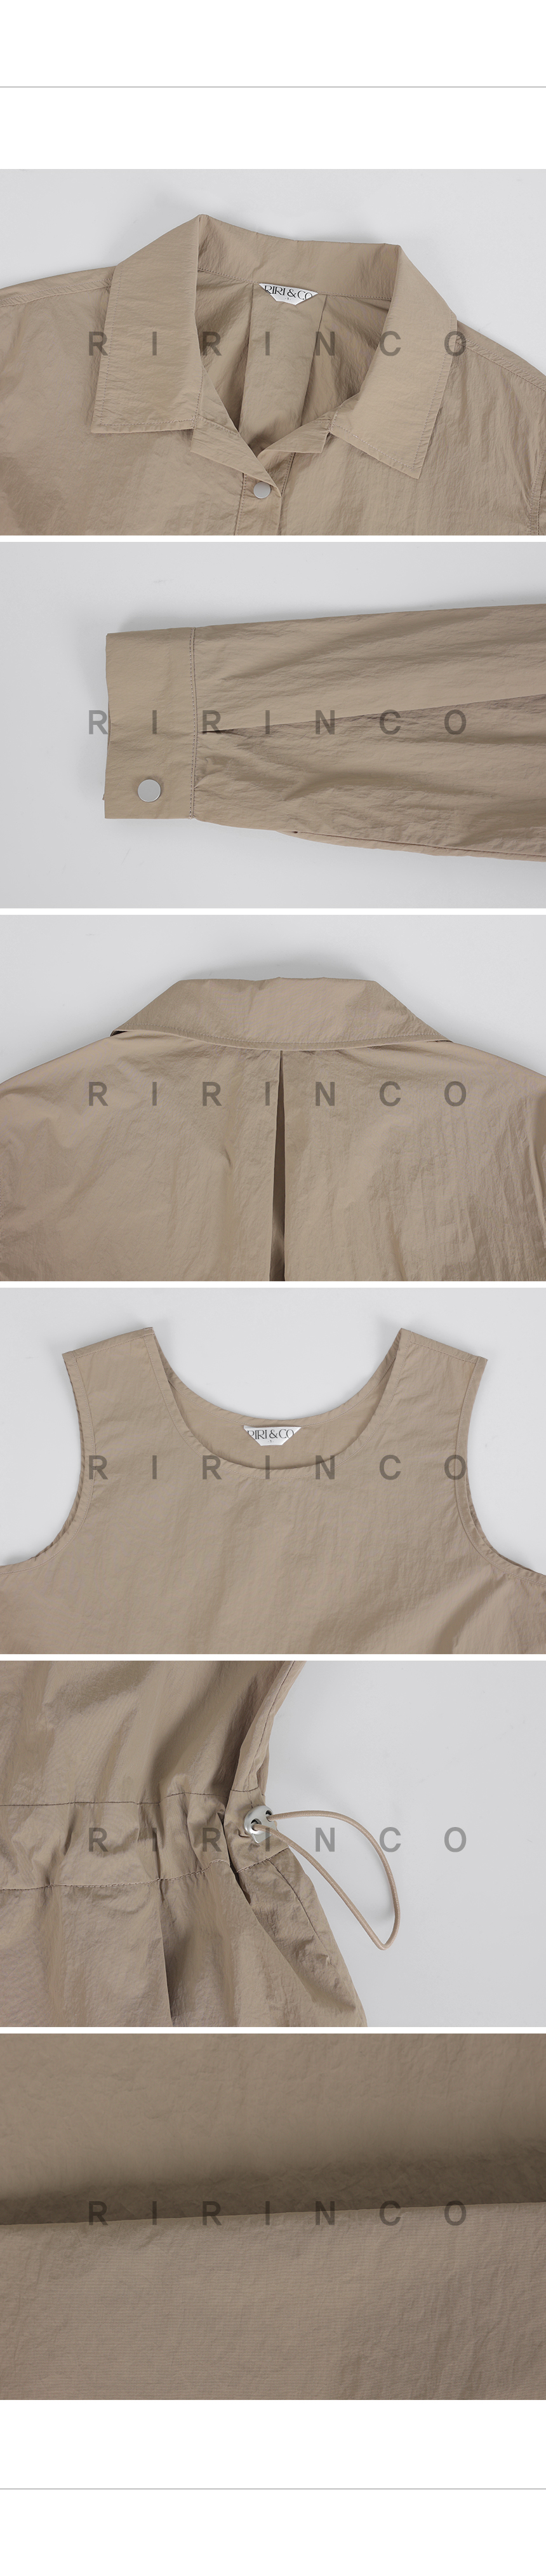 RIRINCO クロップドジャケット&ノースリーブロングワンピースセット